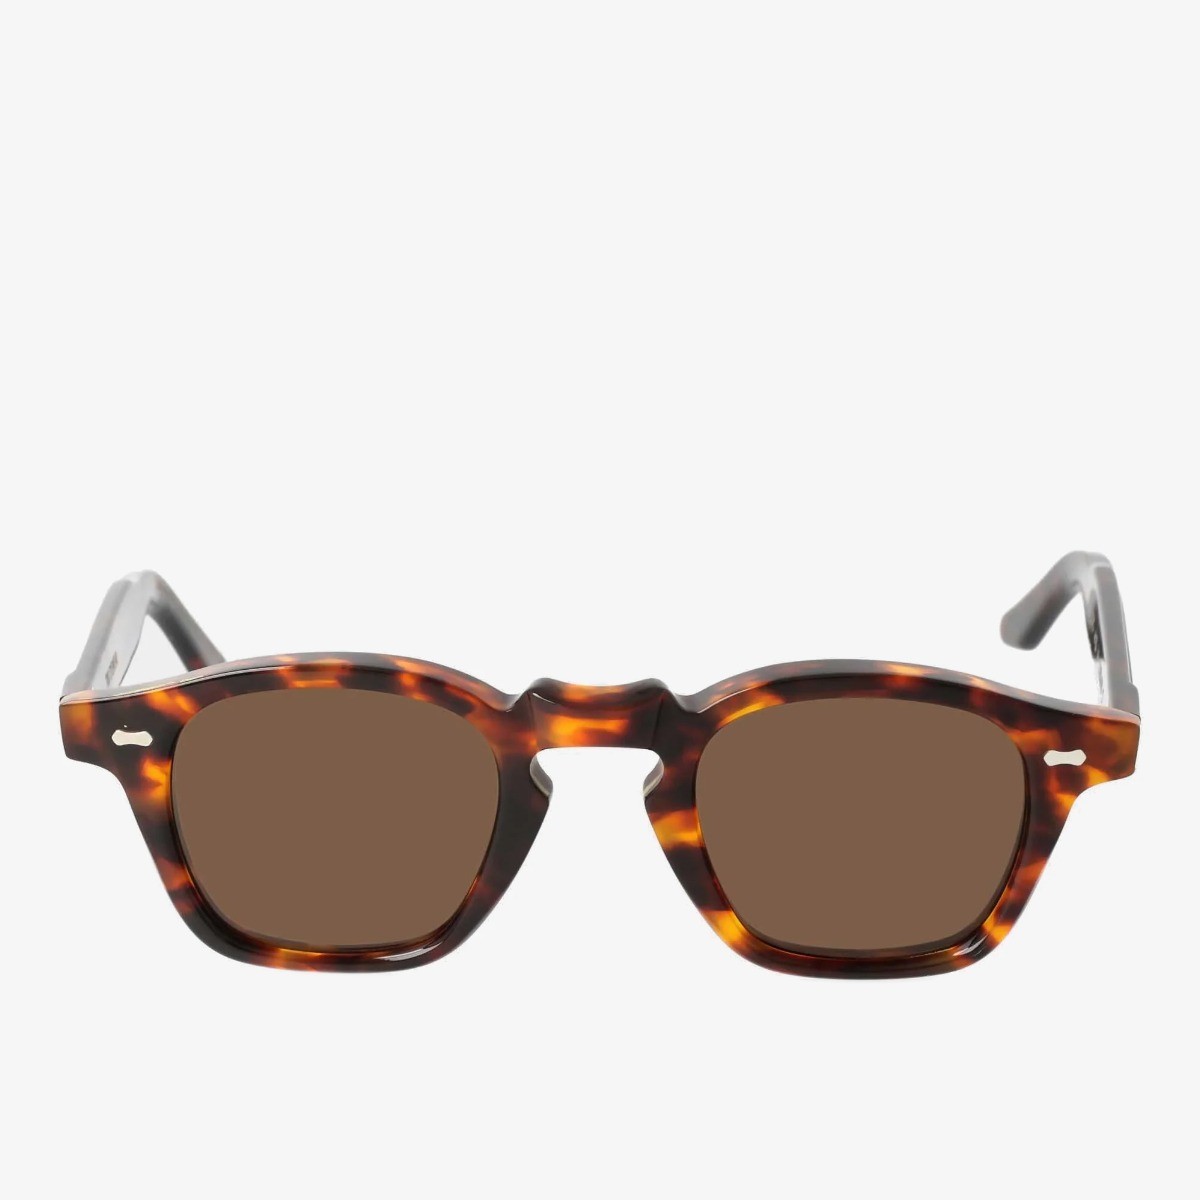 TBD Eyewear Cord saulės akiniai rudais rėmeliais ir rudais lęšiais